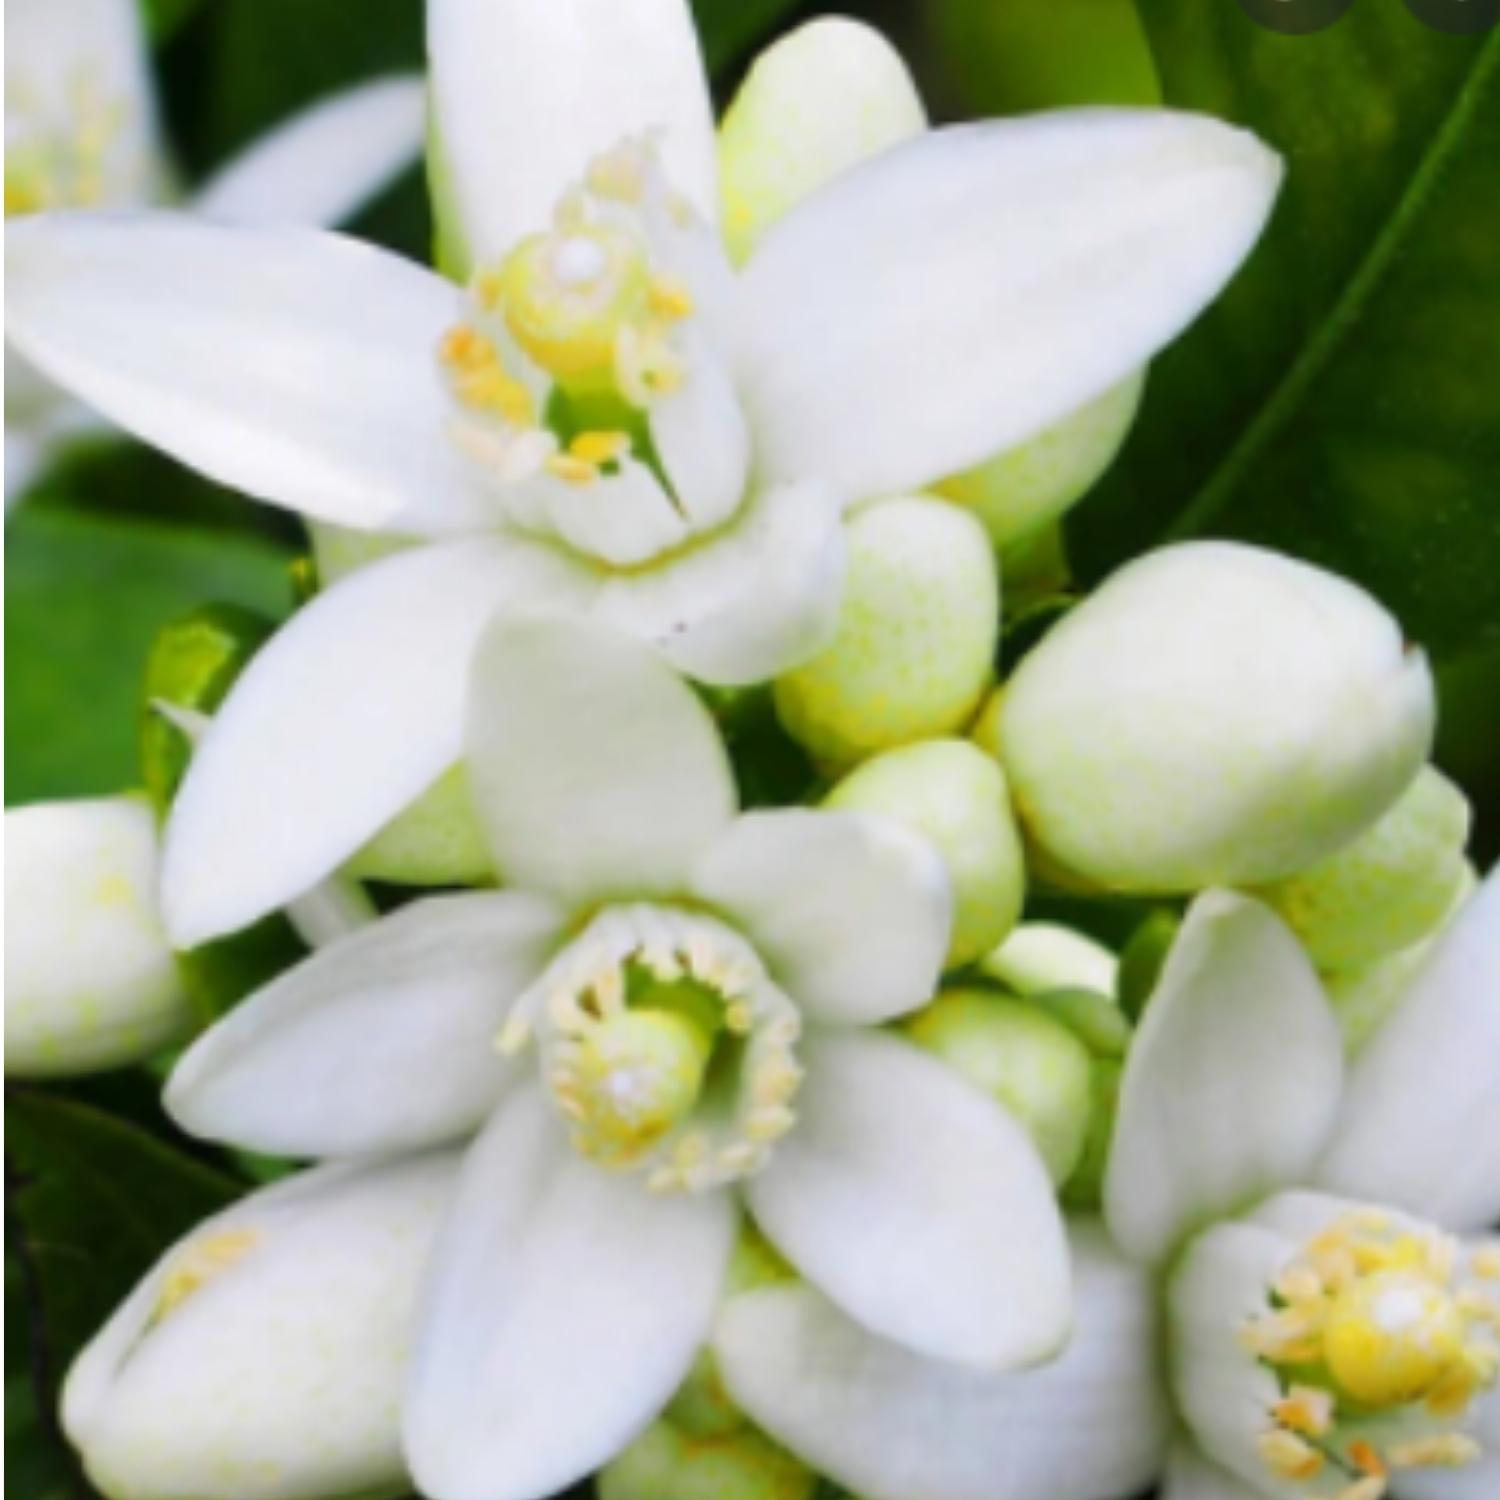 Phân bón MKP HAIFA Isarel 0-52-34, phân bón kích hoa,bật bông,tạo mầm hoa, xử lý hoa trái vụ, có đóng gói 1kg